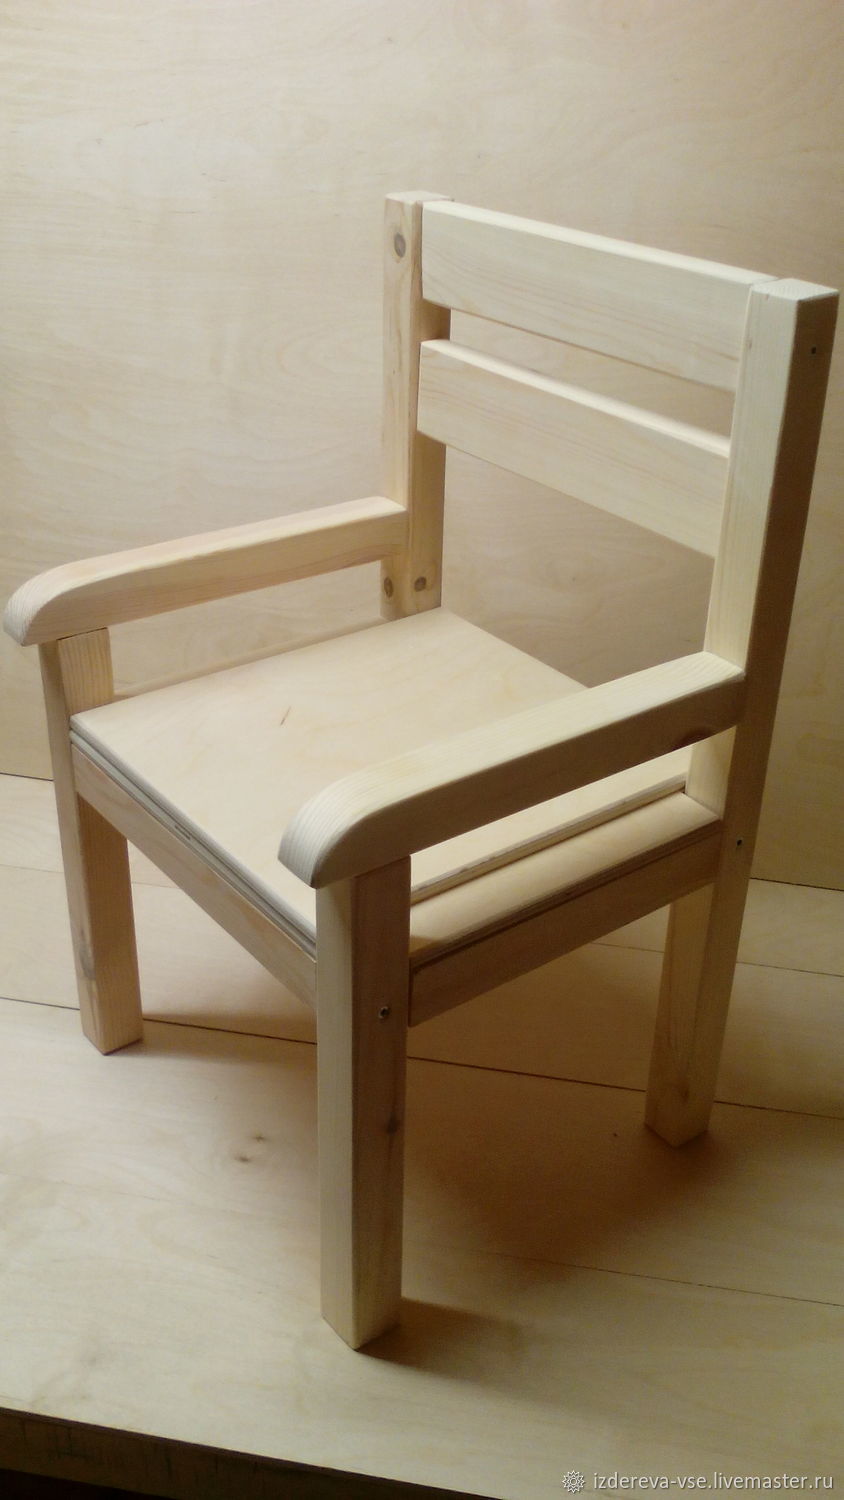 стул для ребенка с подлокотниками